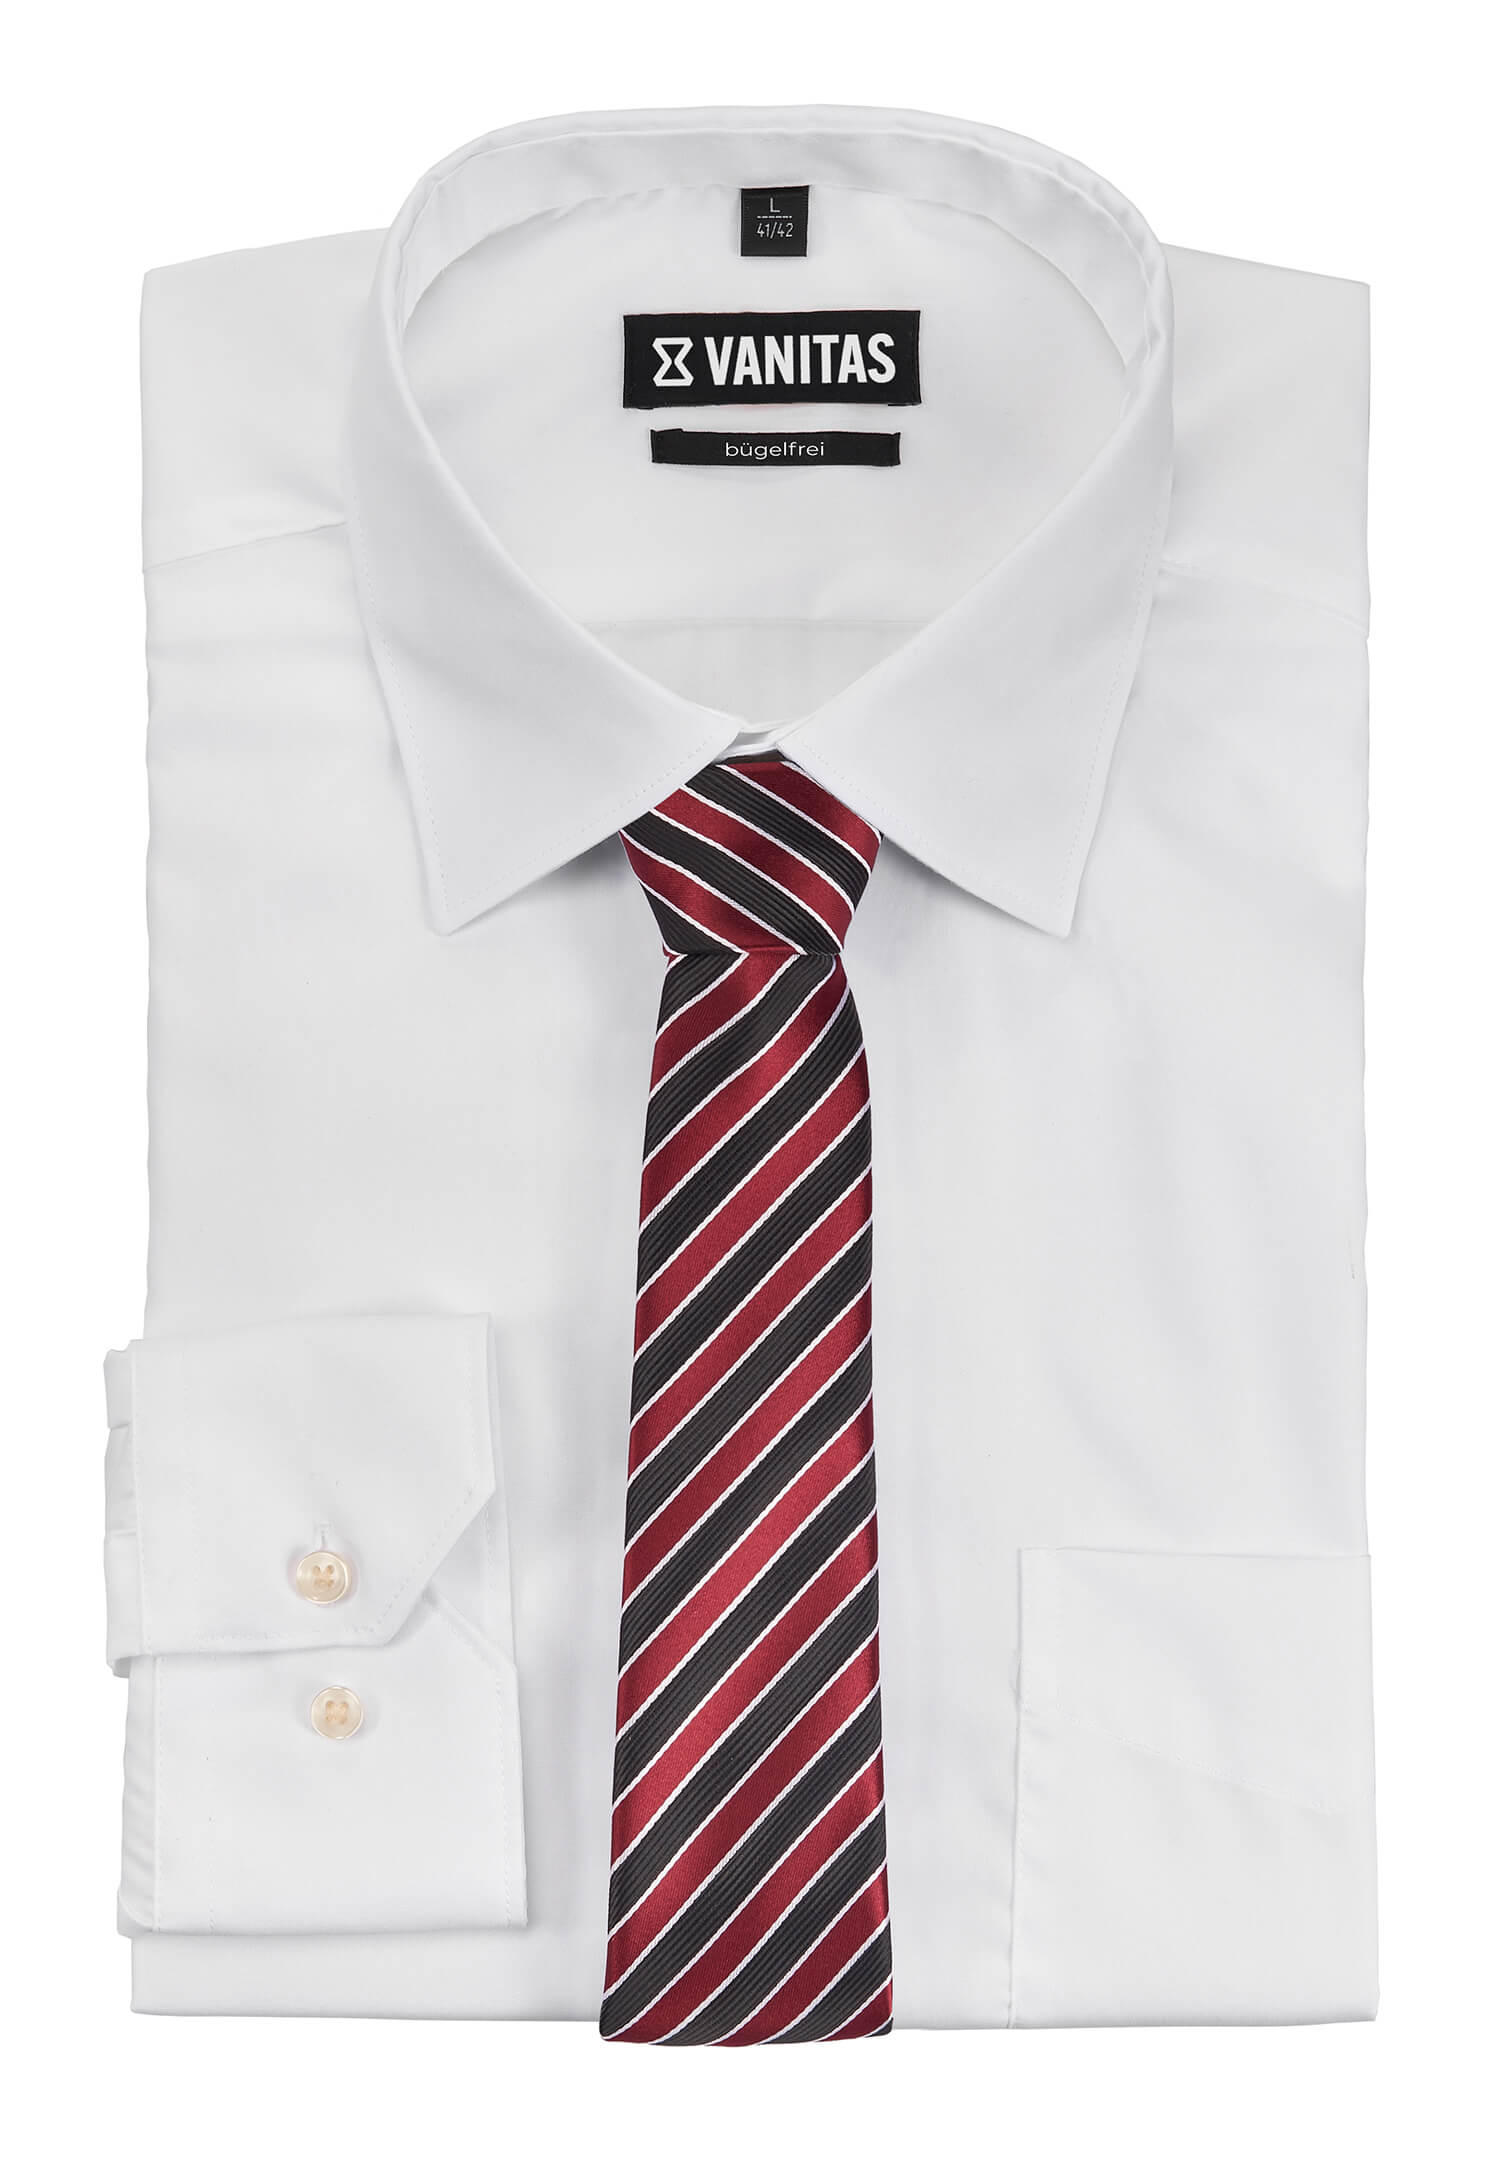 Krawatte vorgebunden mit Gummizug - schwarz/bordeaux/weiß gestreift